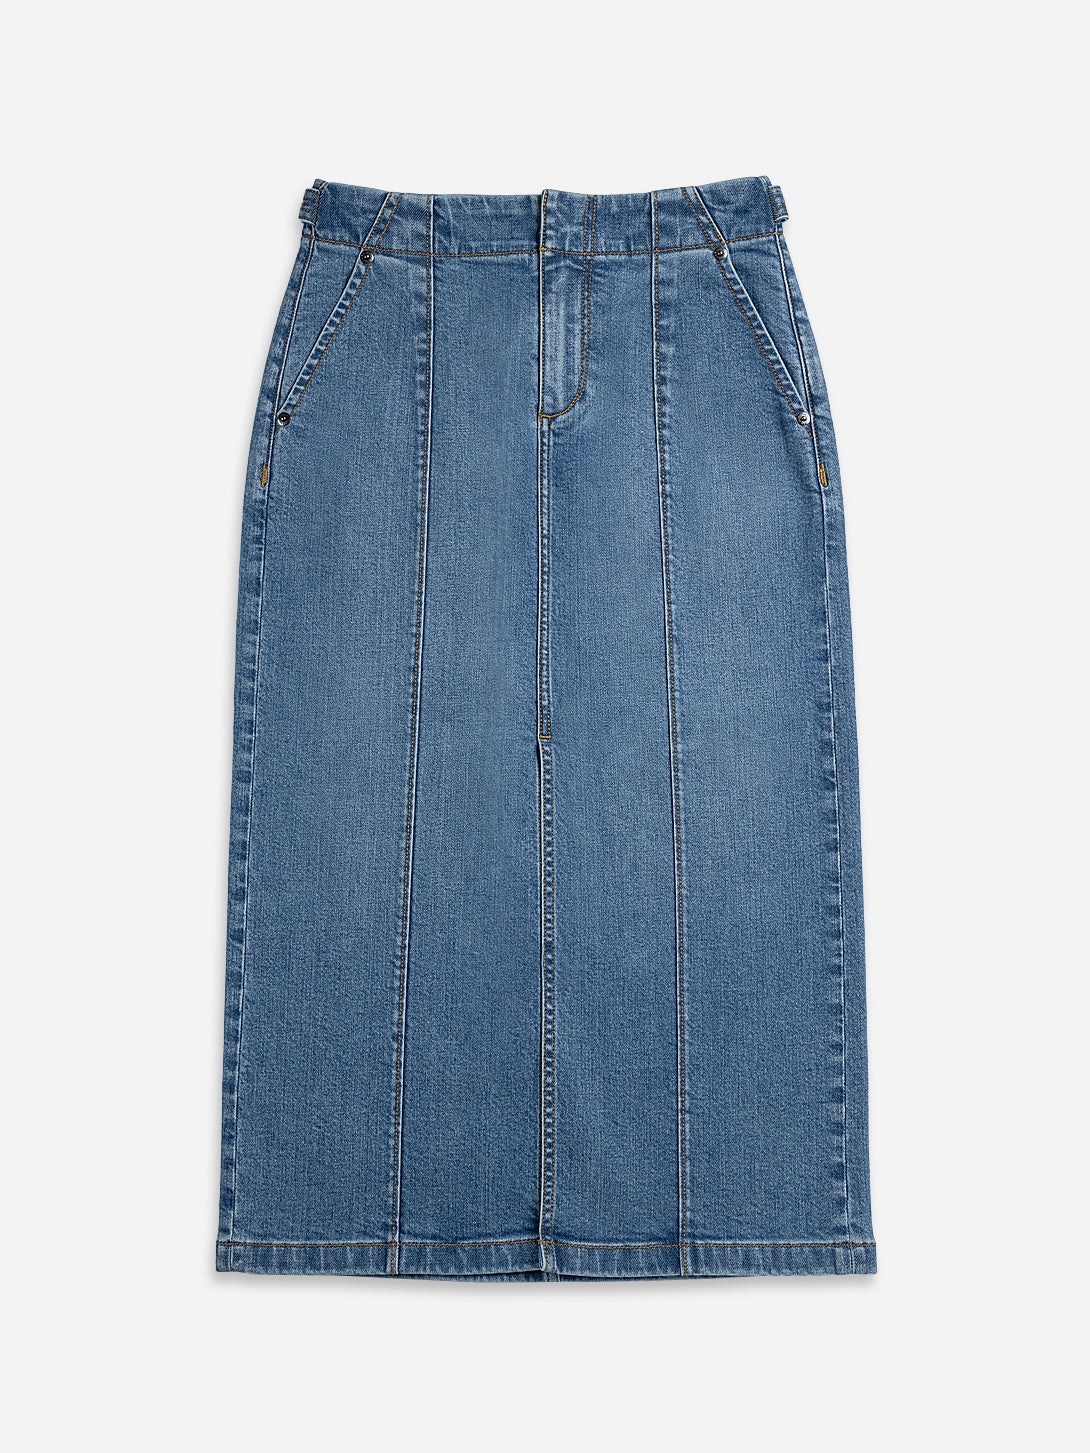 Mid Indigo Panel Denim Skirt Classic Denim Long Skirt